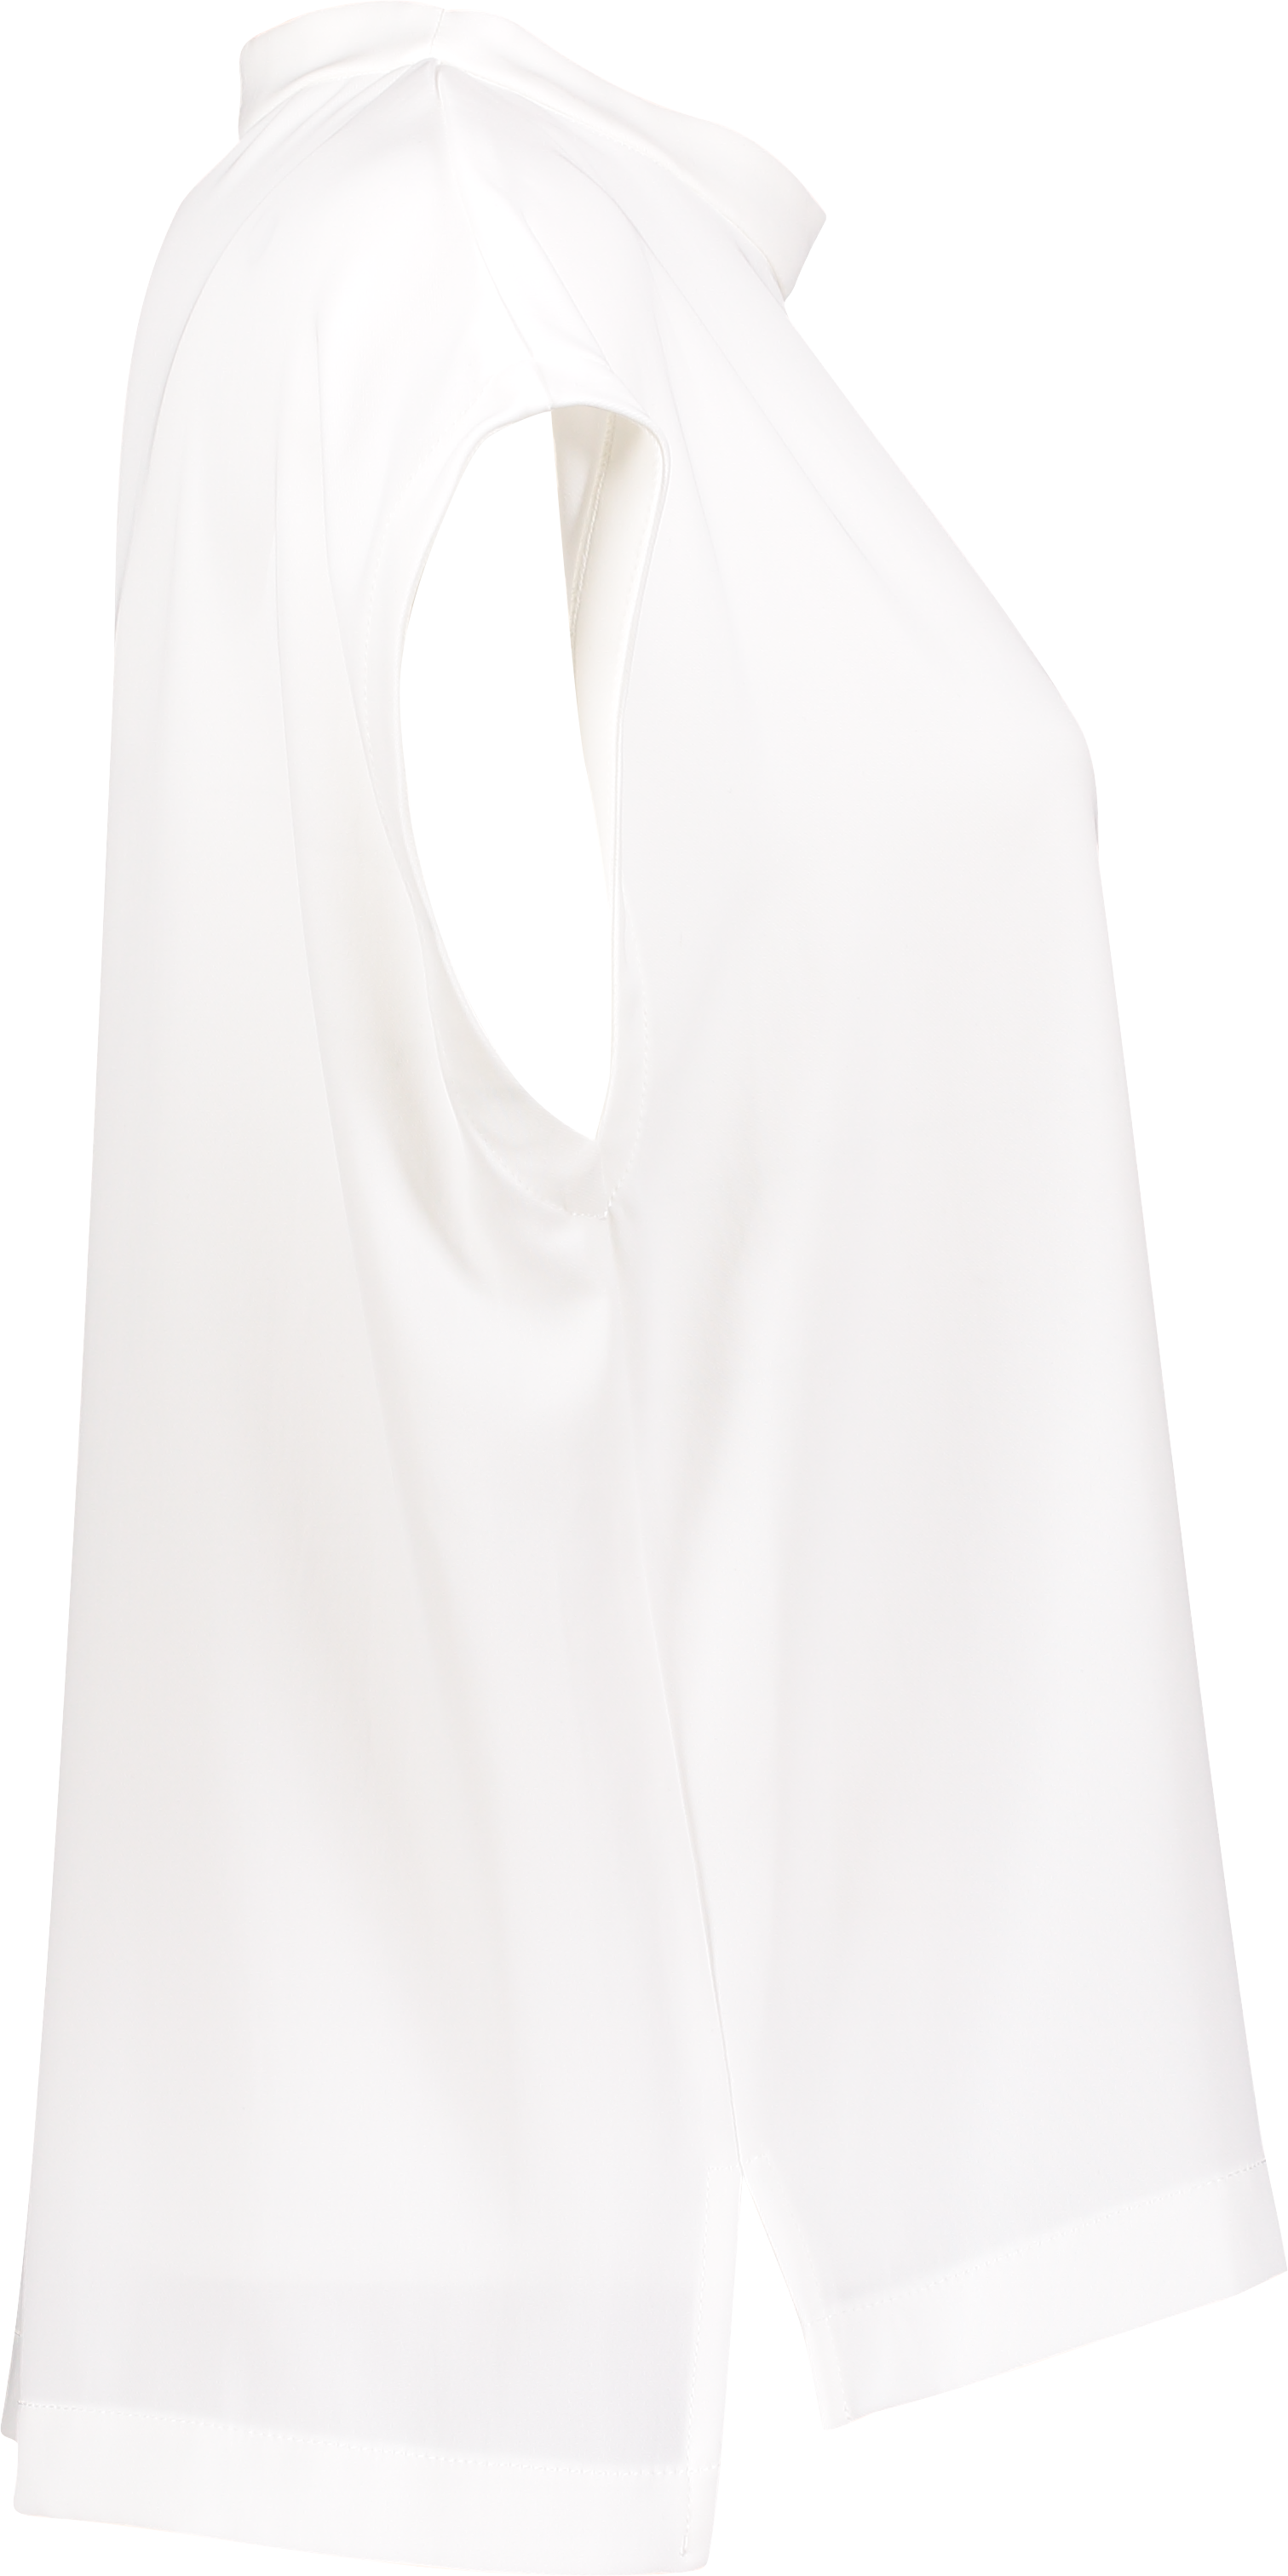 Shirt TJ39 1108 Off White